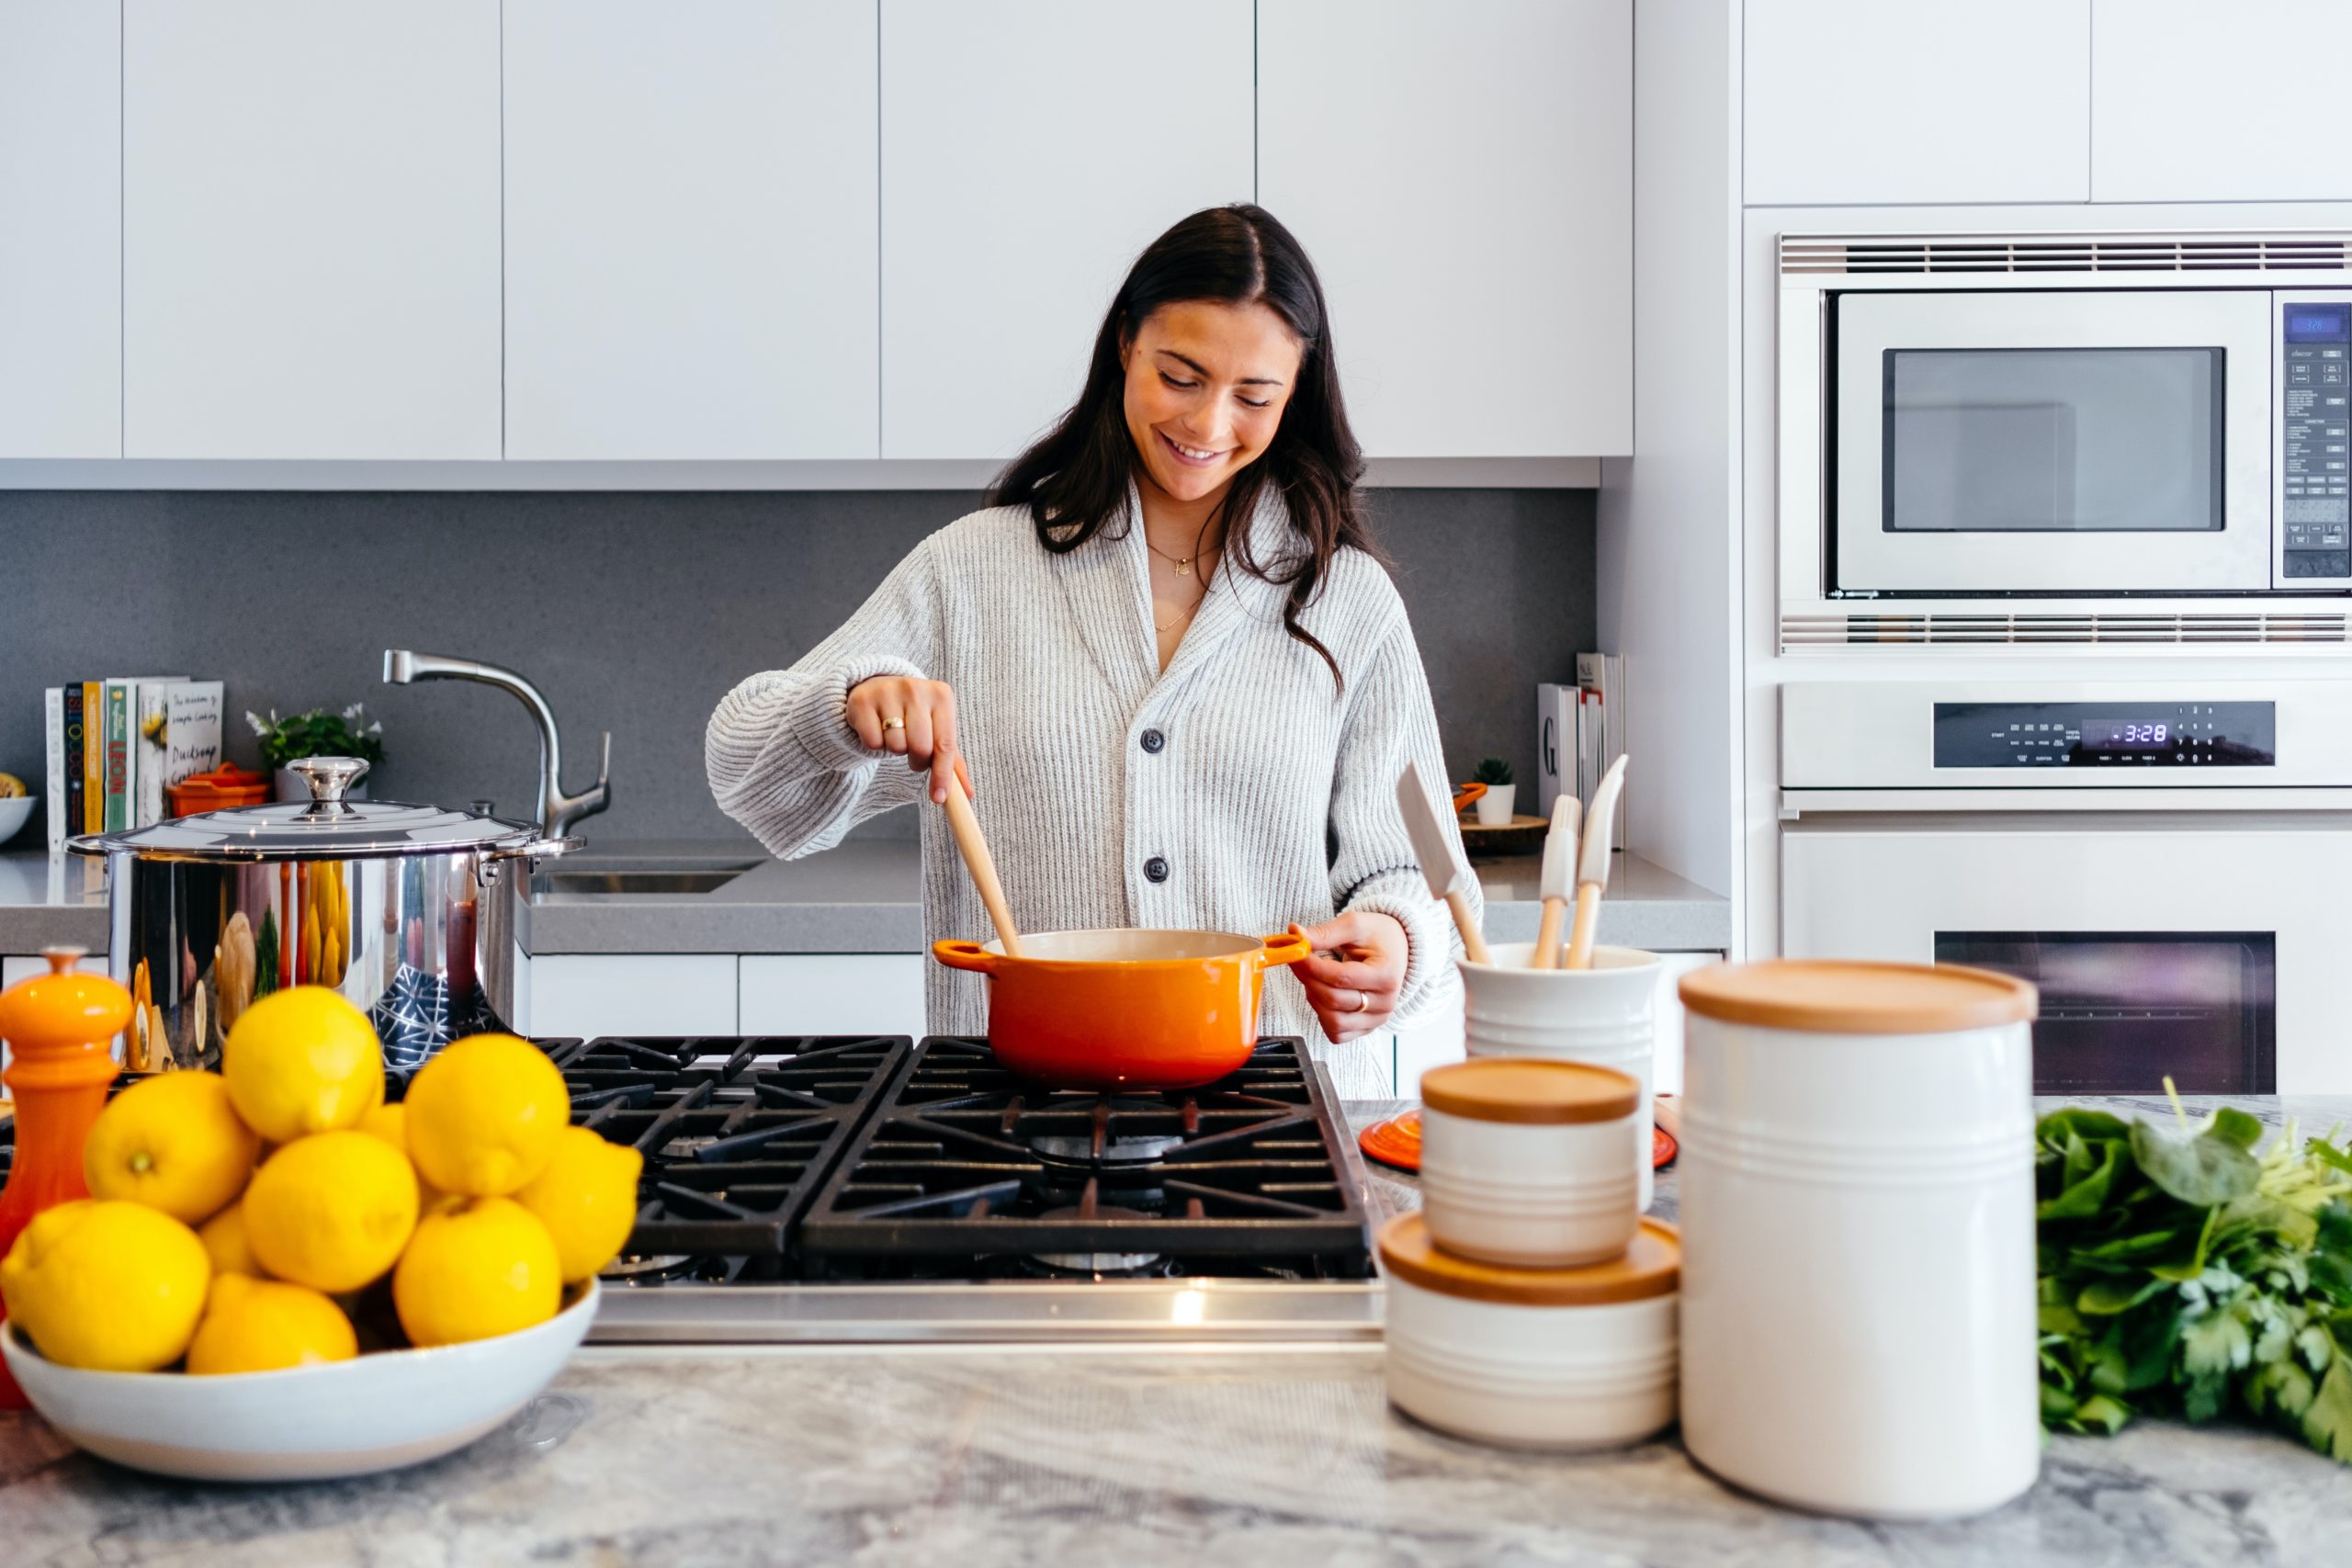 Μαγειρέψτε ζυμαρικά σε μόλις 2 λεπτά – Πώς θα μειώσετε τον χρόνο με ένα απλό κόλπο